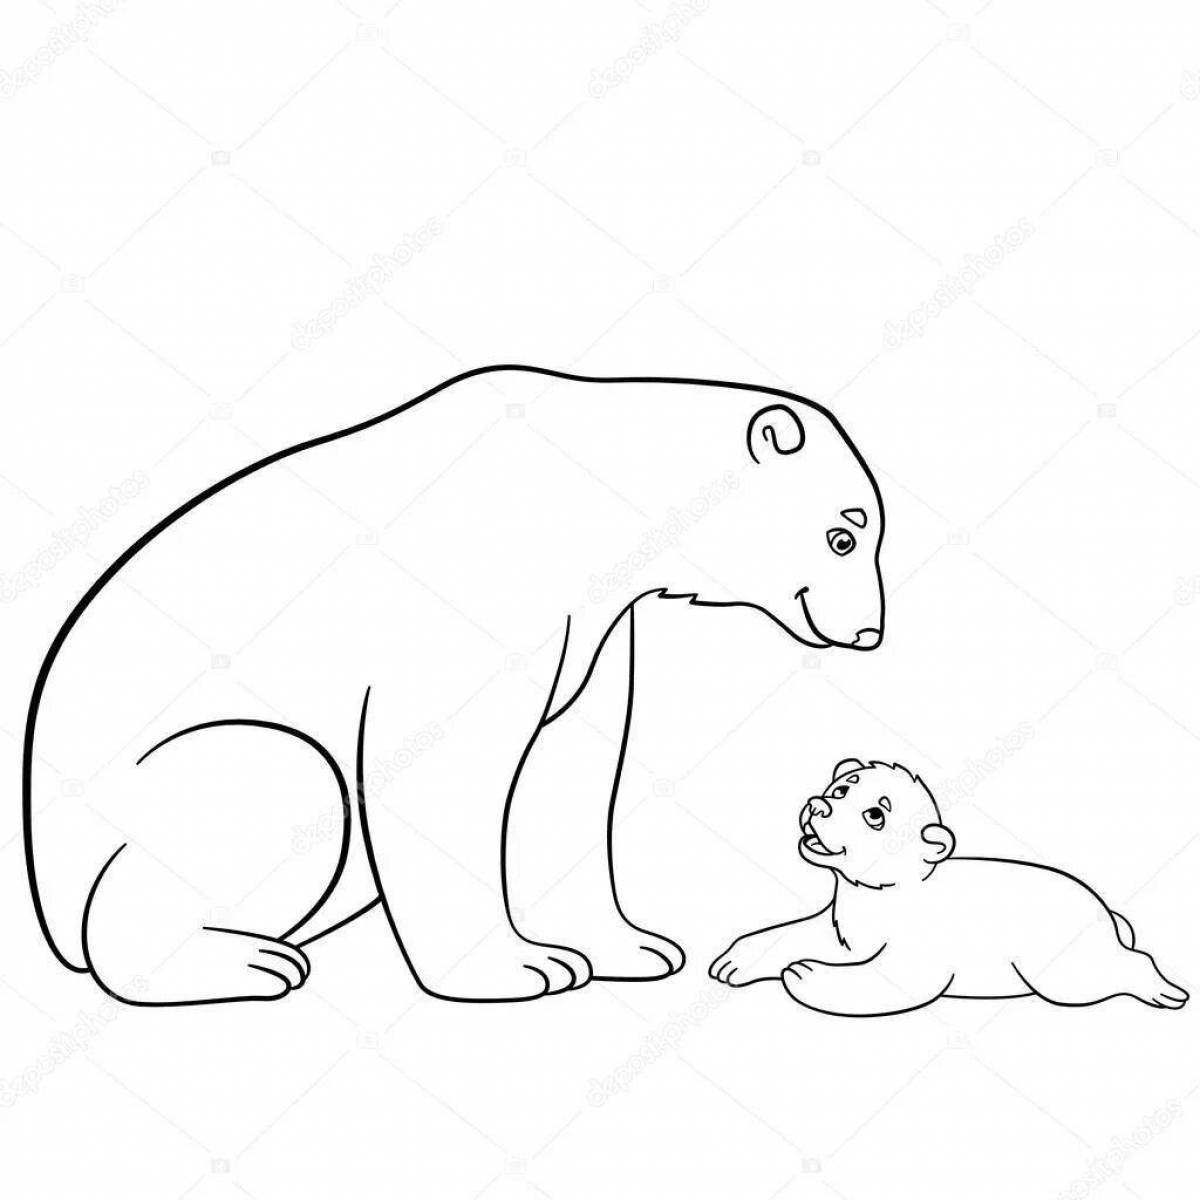 Coloring book playful polar bear with cub